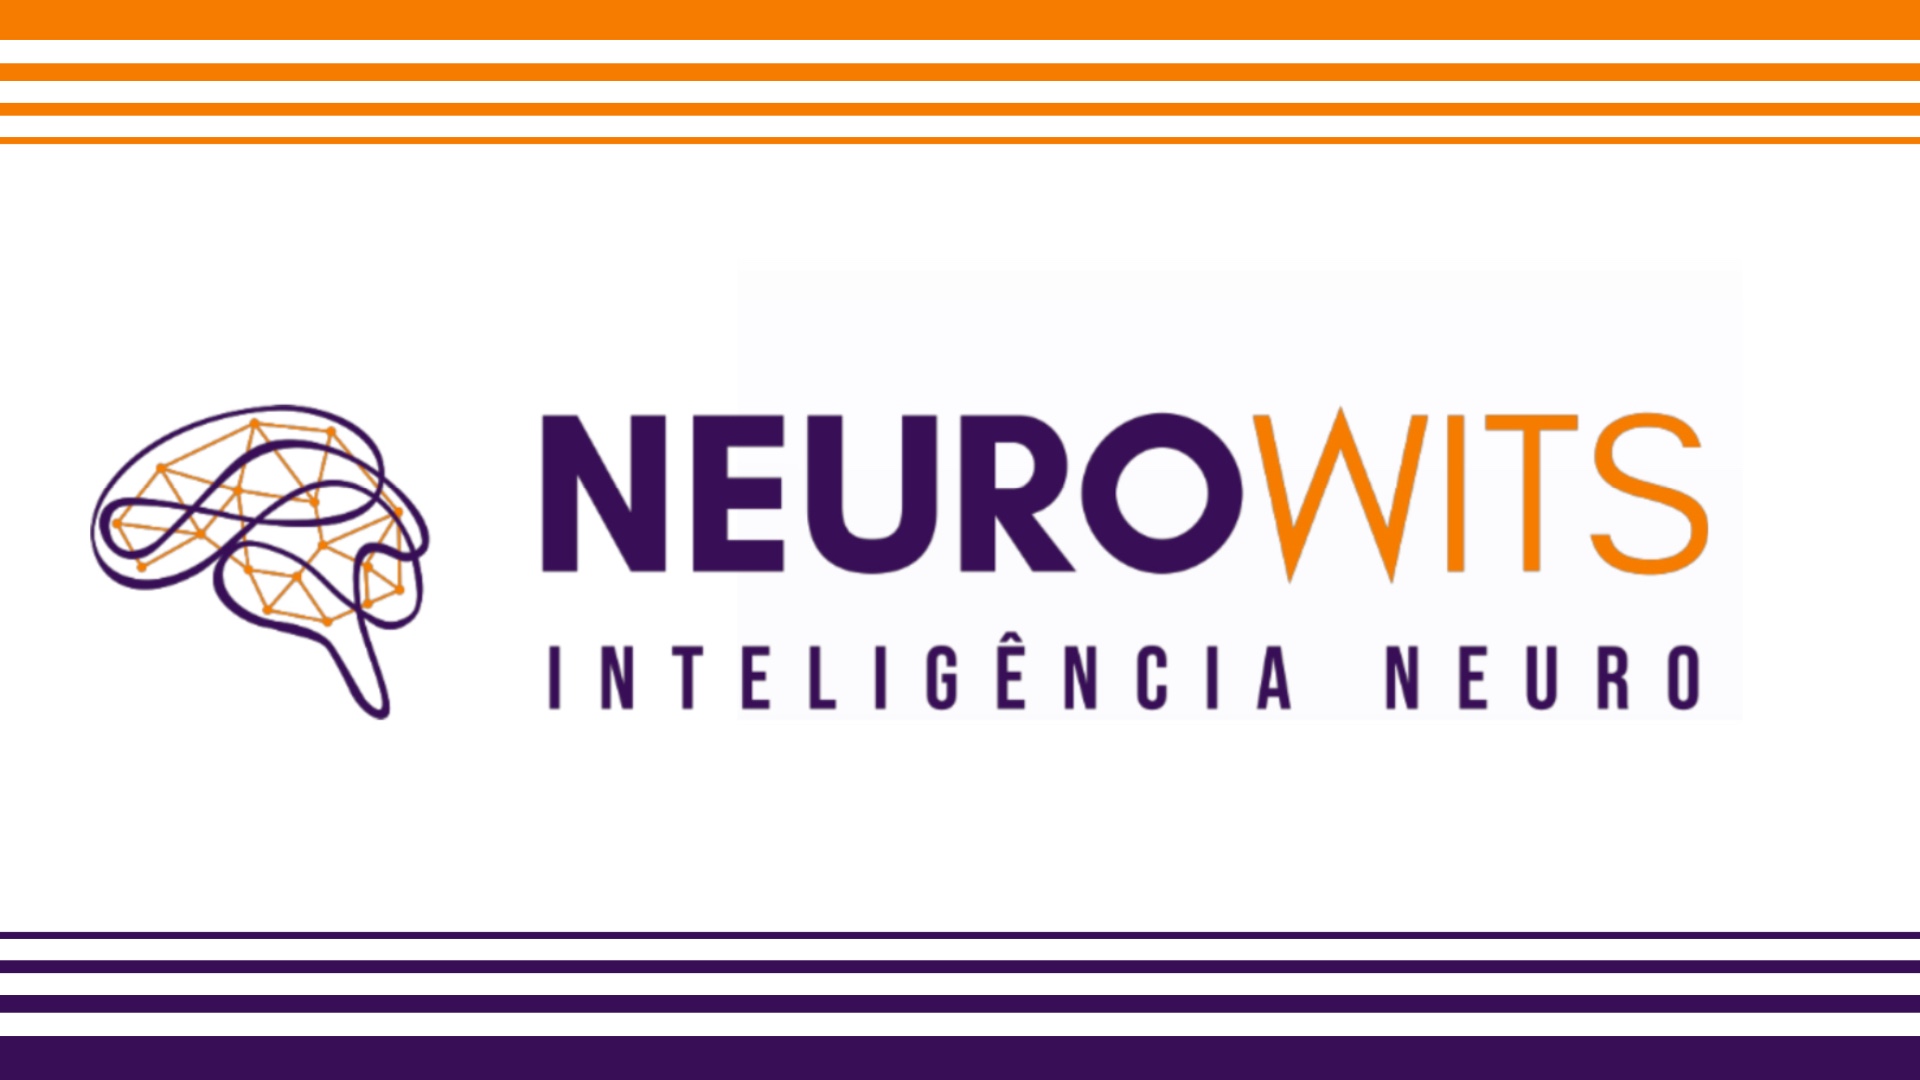 Neurowits oferece consultoria com IA para maximizar impacto da publicidade